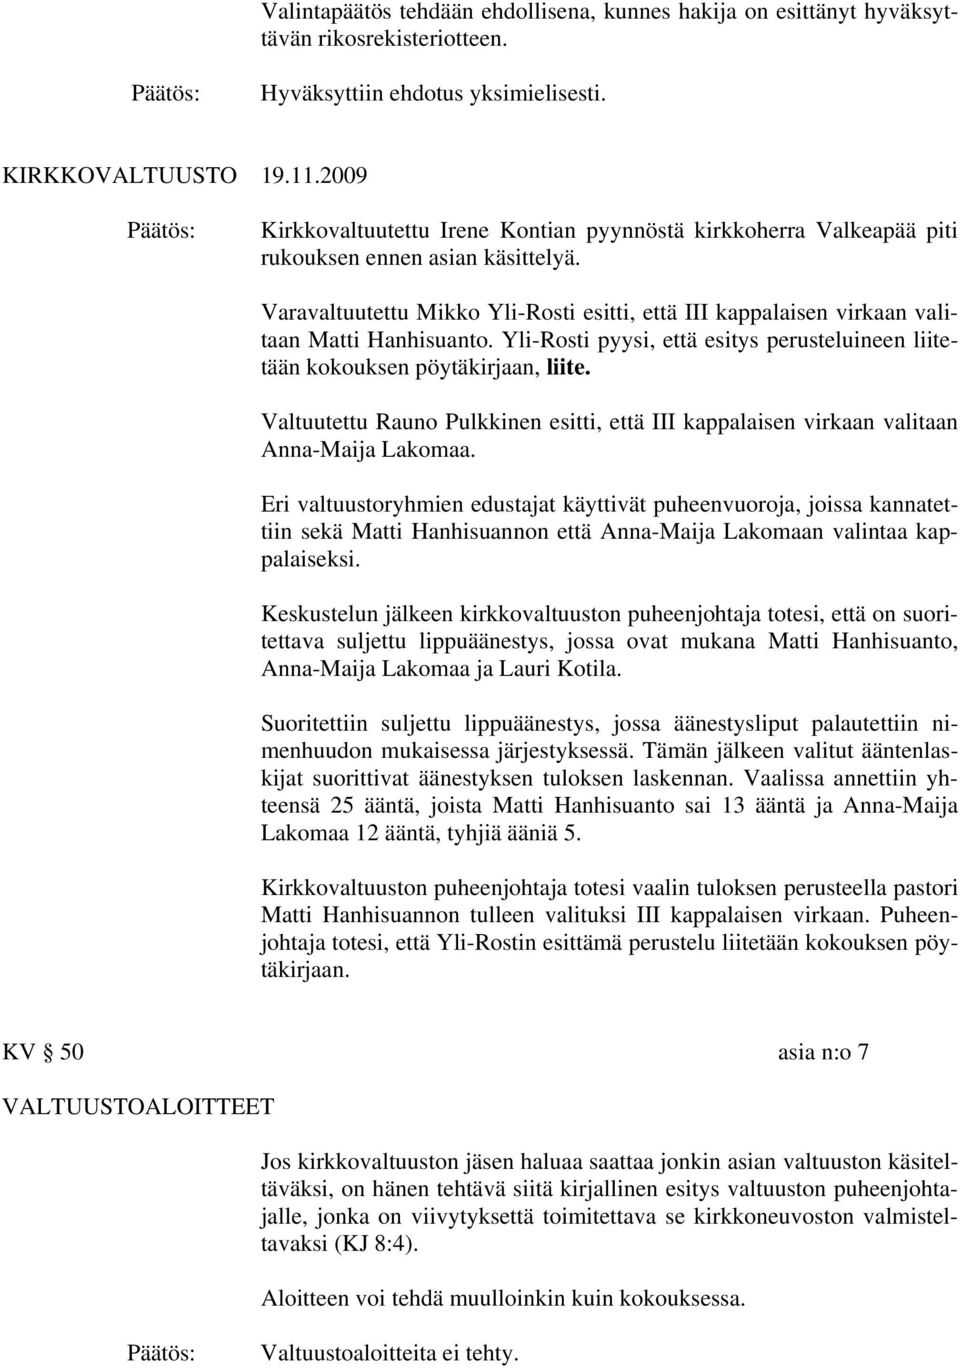 Varavaltuutettu Mikko Yli-Rosti esitti, että III kappalaisen virkaan valitaan Matti Hanhisuanto. Yli-Rosti pyysi, että esitys perusteluineen liitetään kokouksen pöytäkirjaan, liite.